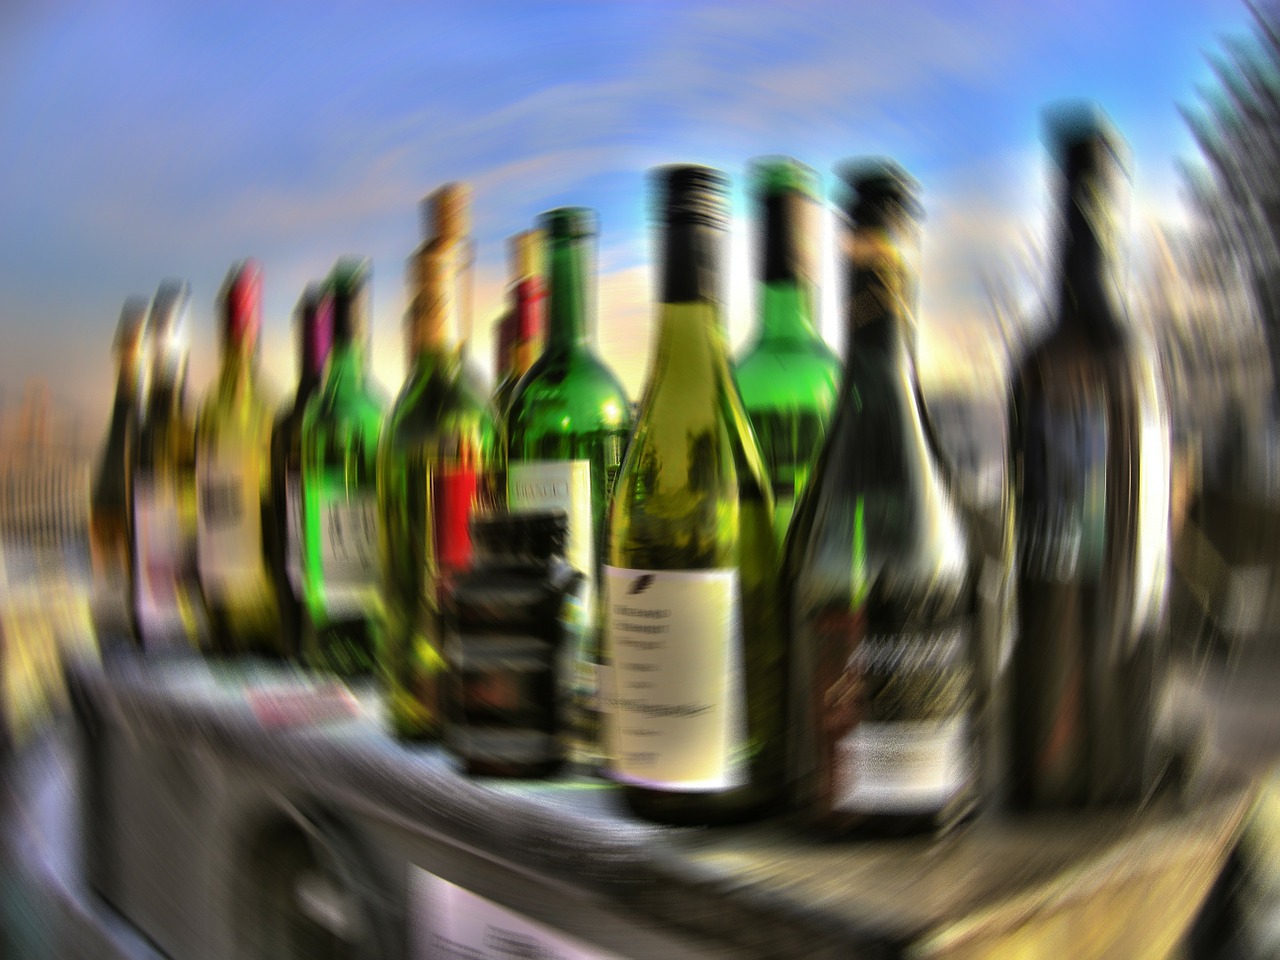 Alkoholis, Gerti, Alkolizmas, Buteliai, Stiklas, Konteineris, Stiklinis Indas, Gėrimai, Raudonas Vynas, Vynas